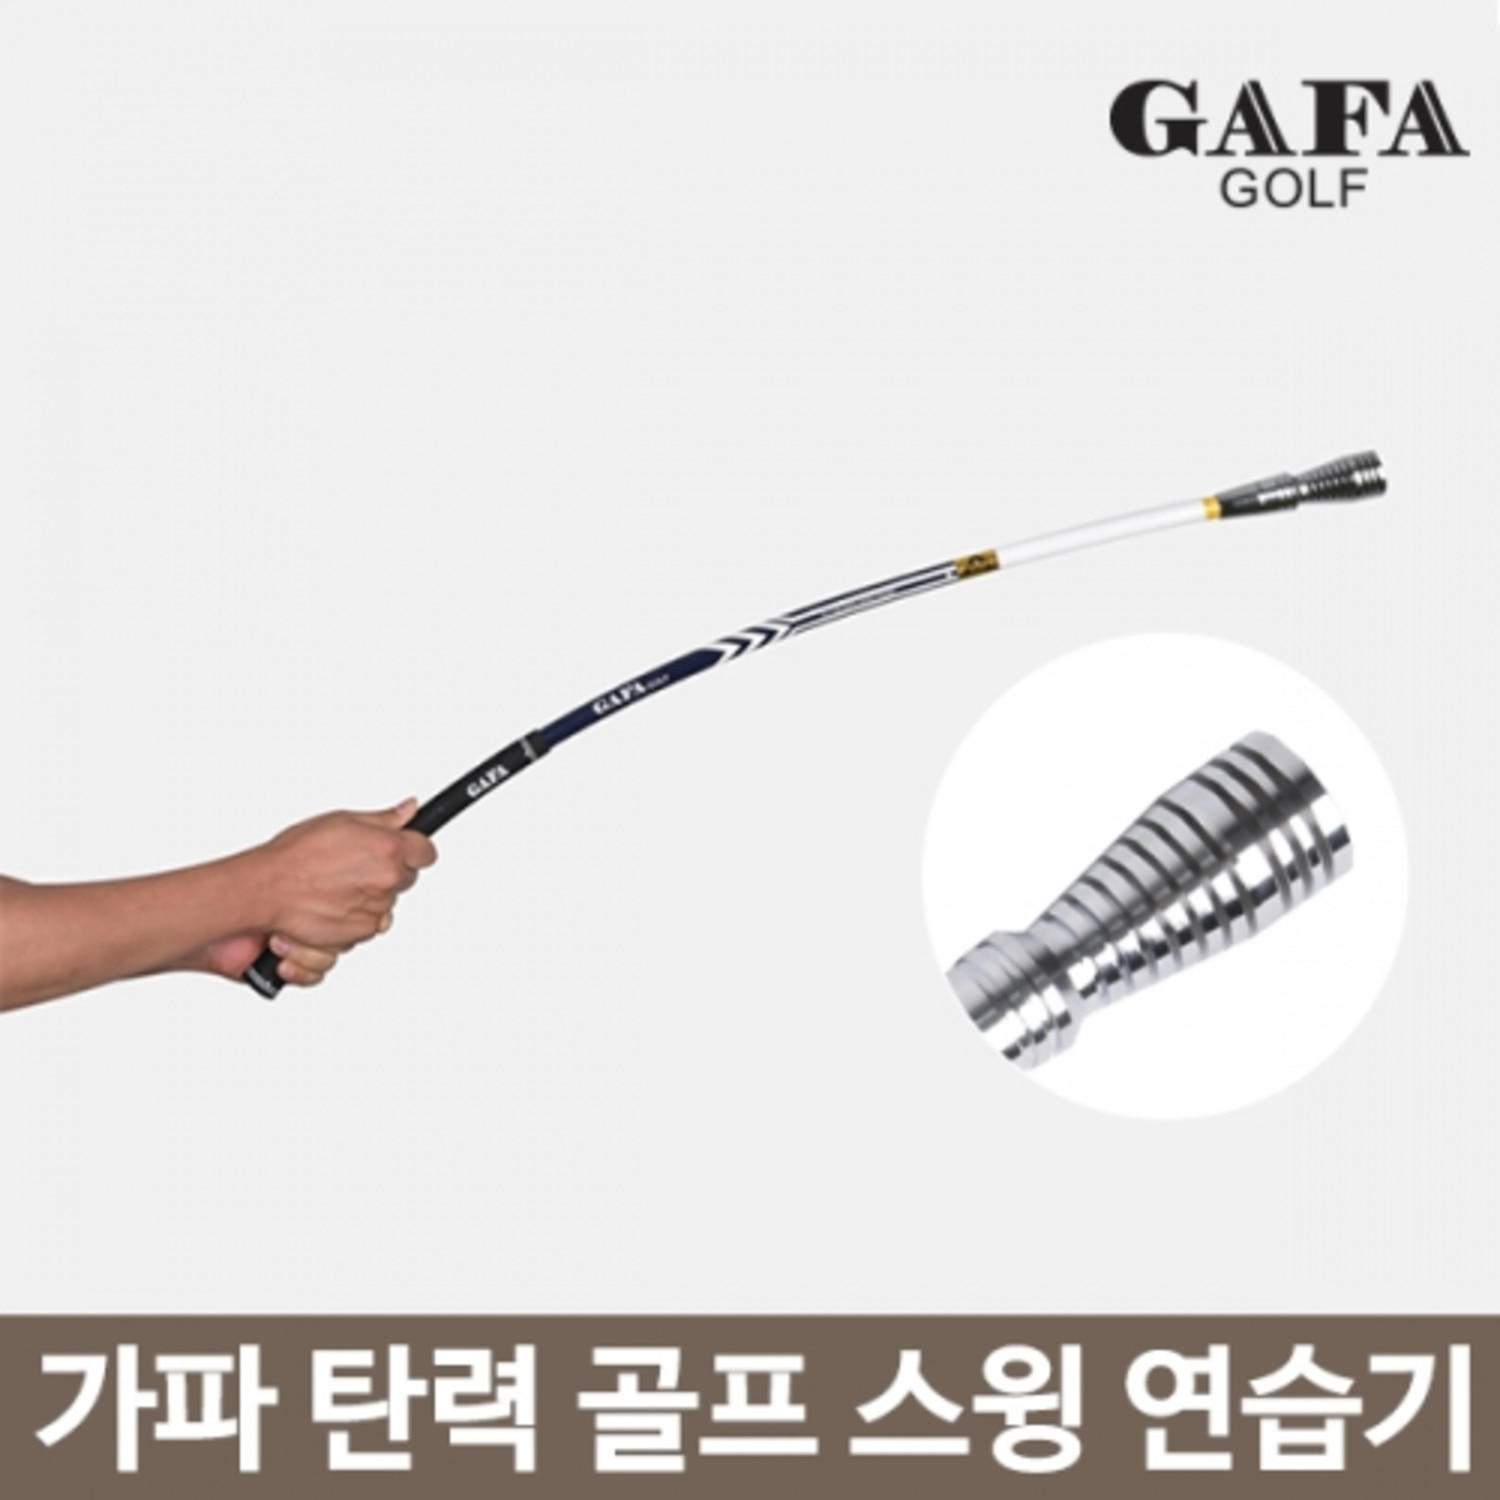 [AVE] 가파 GAFA GOLF 골프스윙 거리연습기 연습용품 109456